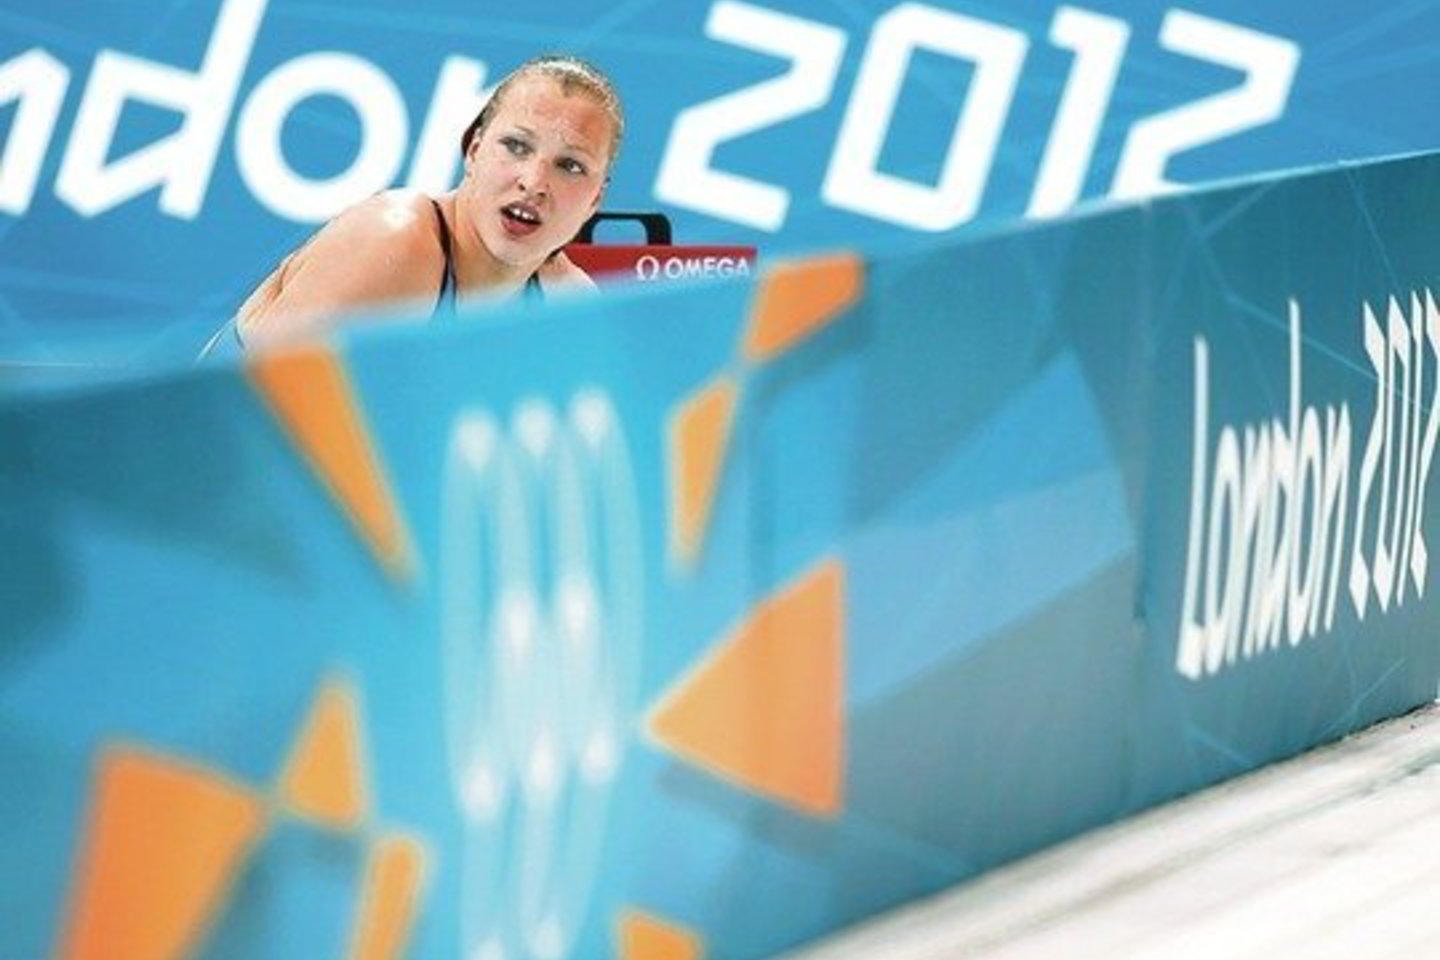 Olimpine plaukimo čempione R.Meilutytė Londone tapo būdama vos penkiolikos. Kur yra jos galimybių riba?<br>AP